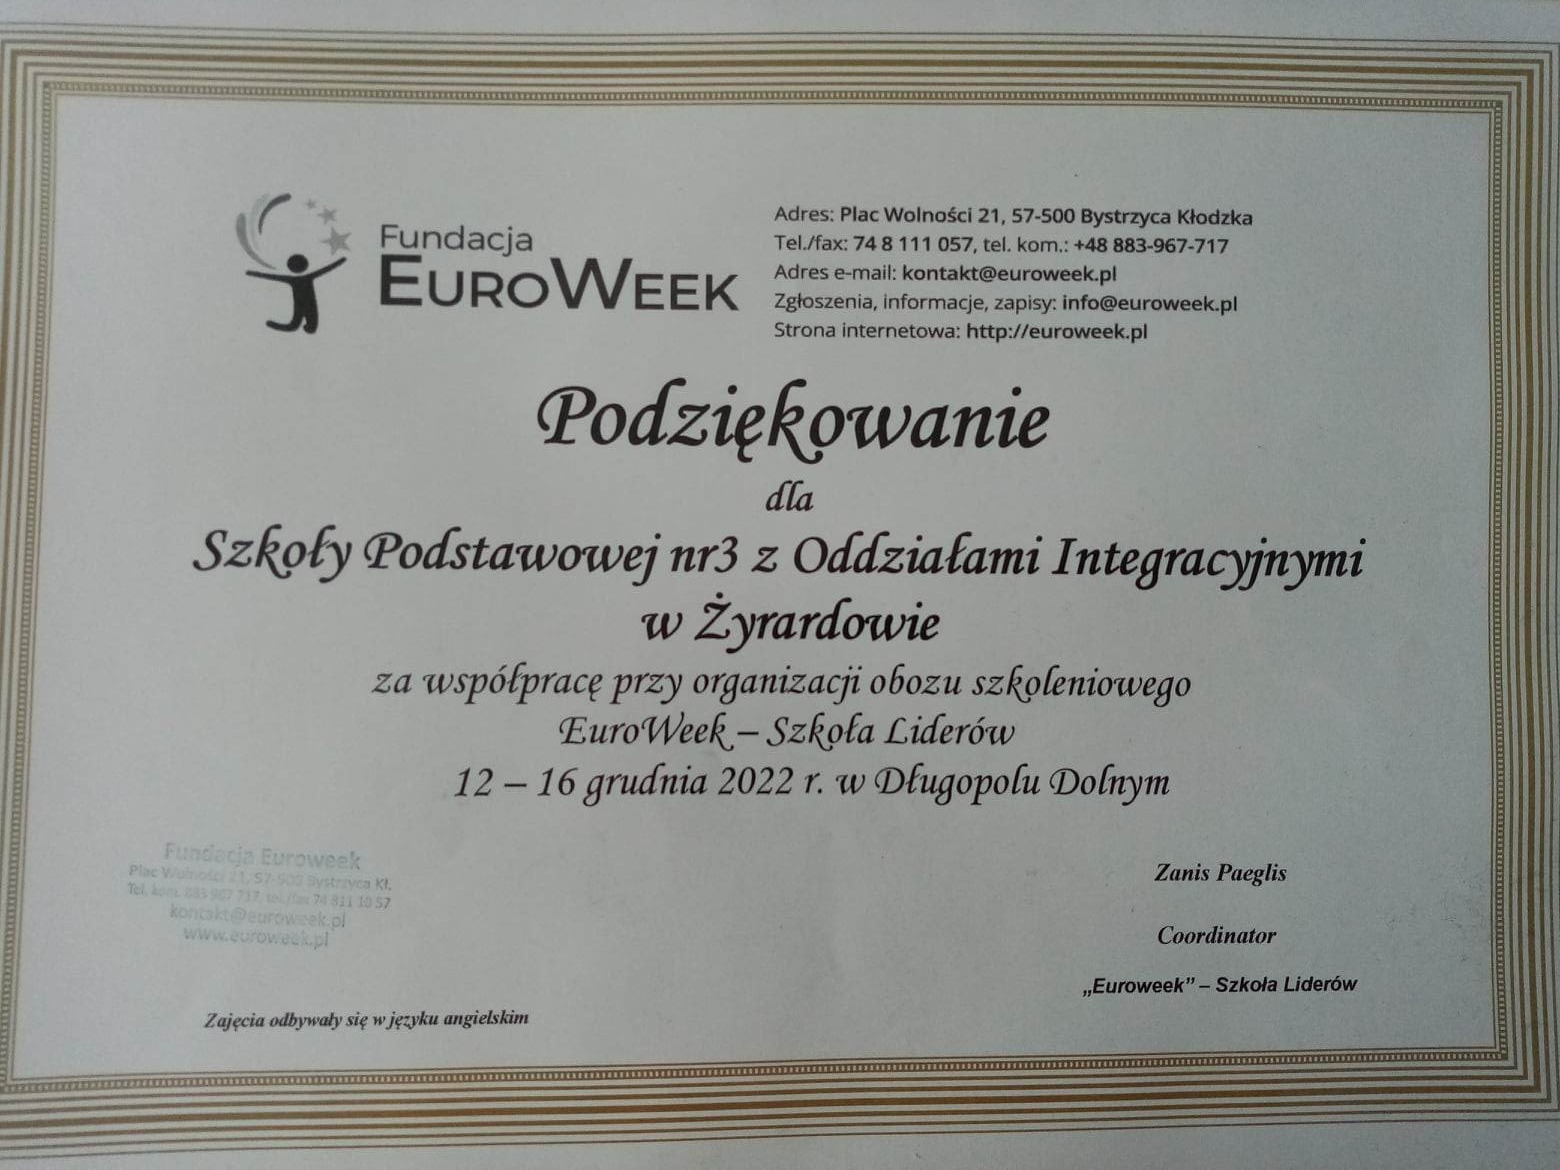 Podziękowanie dla SP 3 za udział w warsztatach EuroWeek